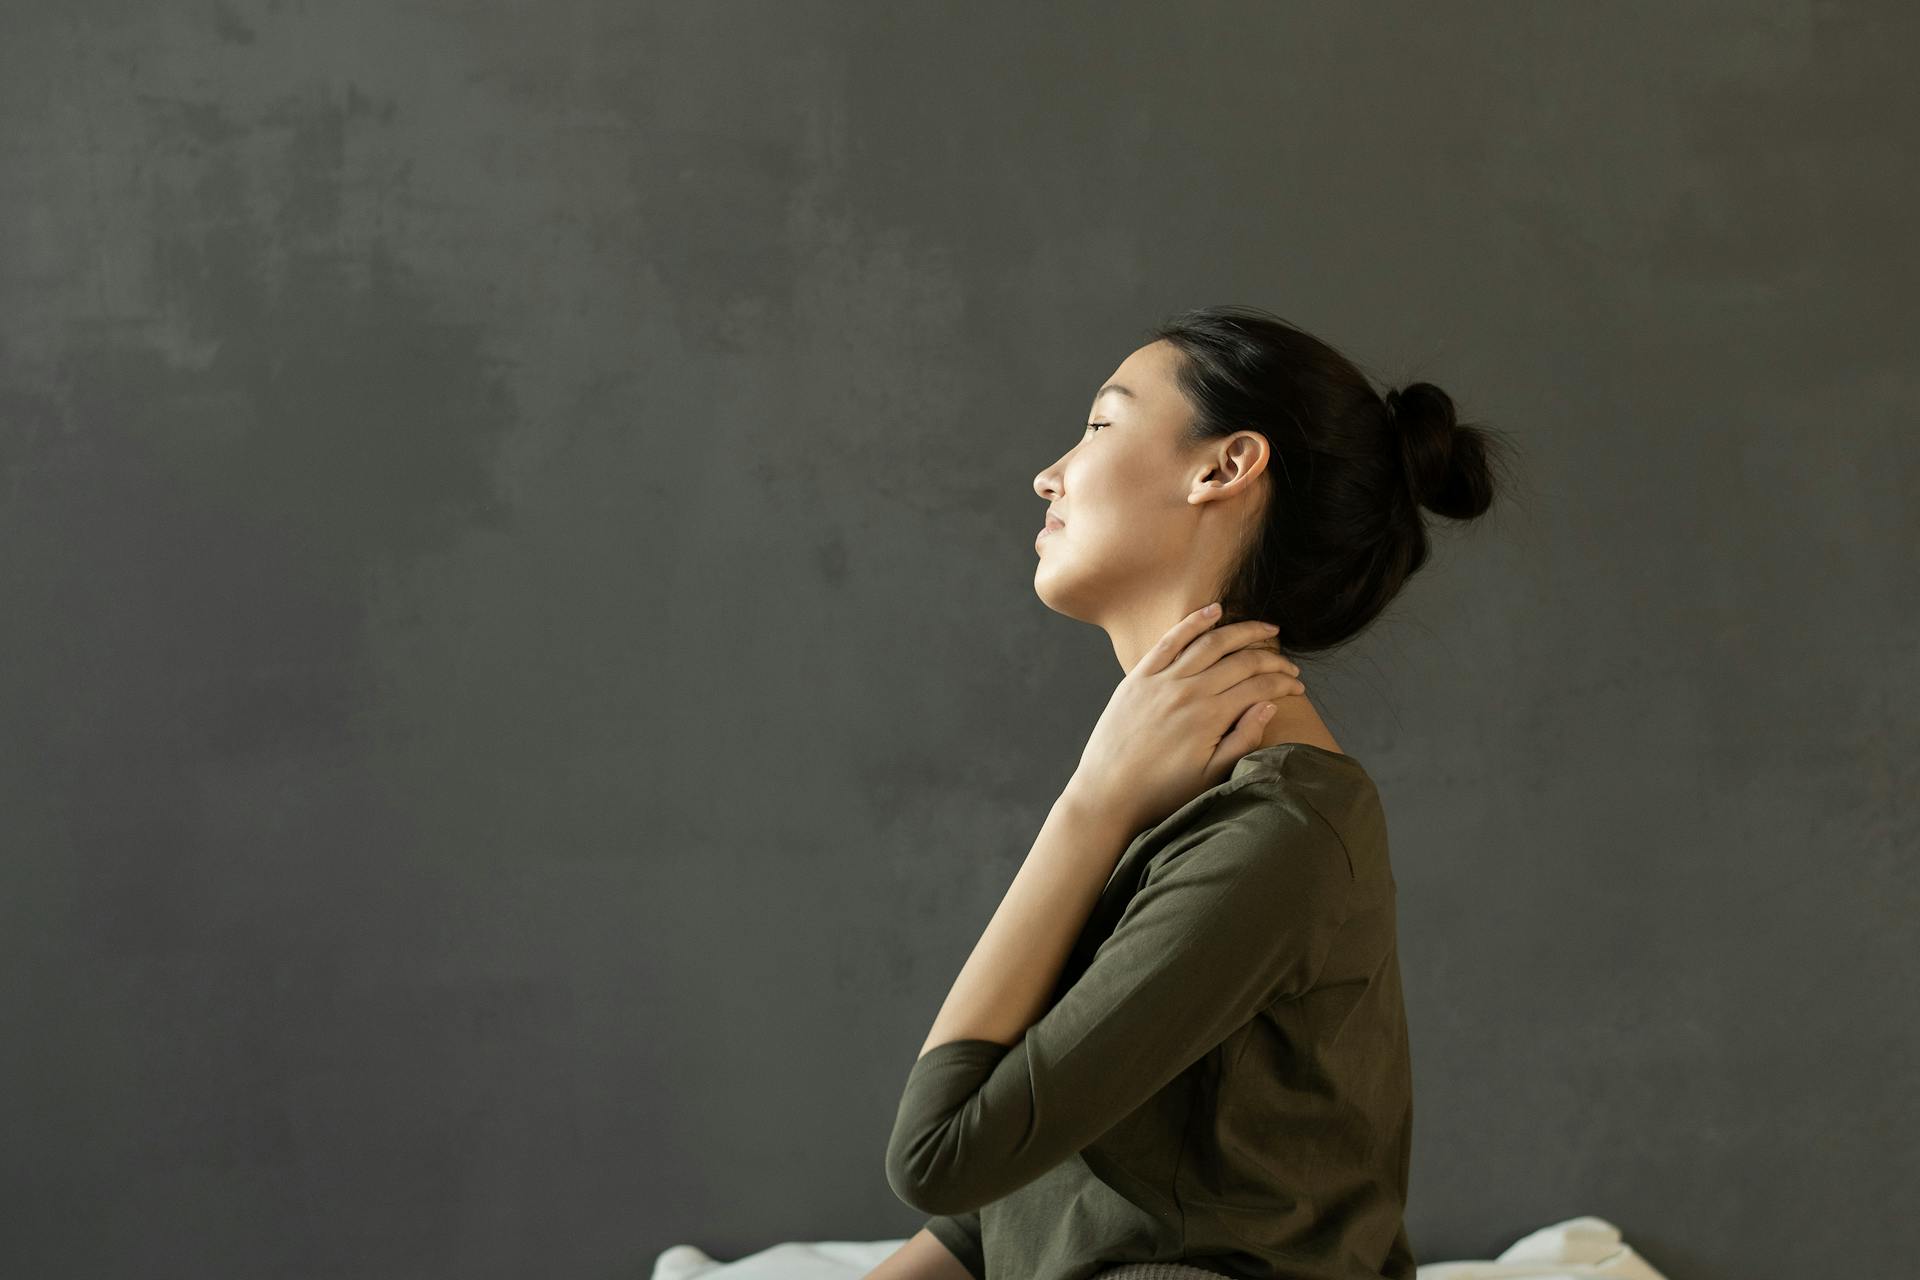 Women in discomfort due to neck pain